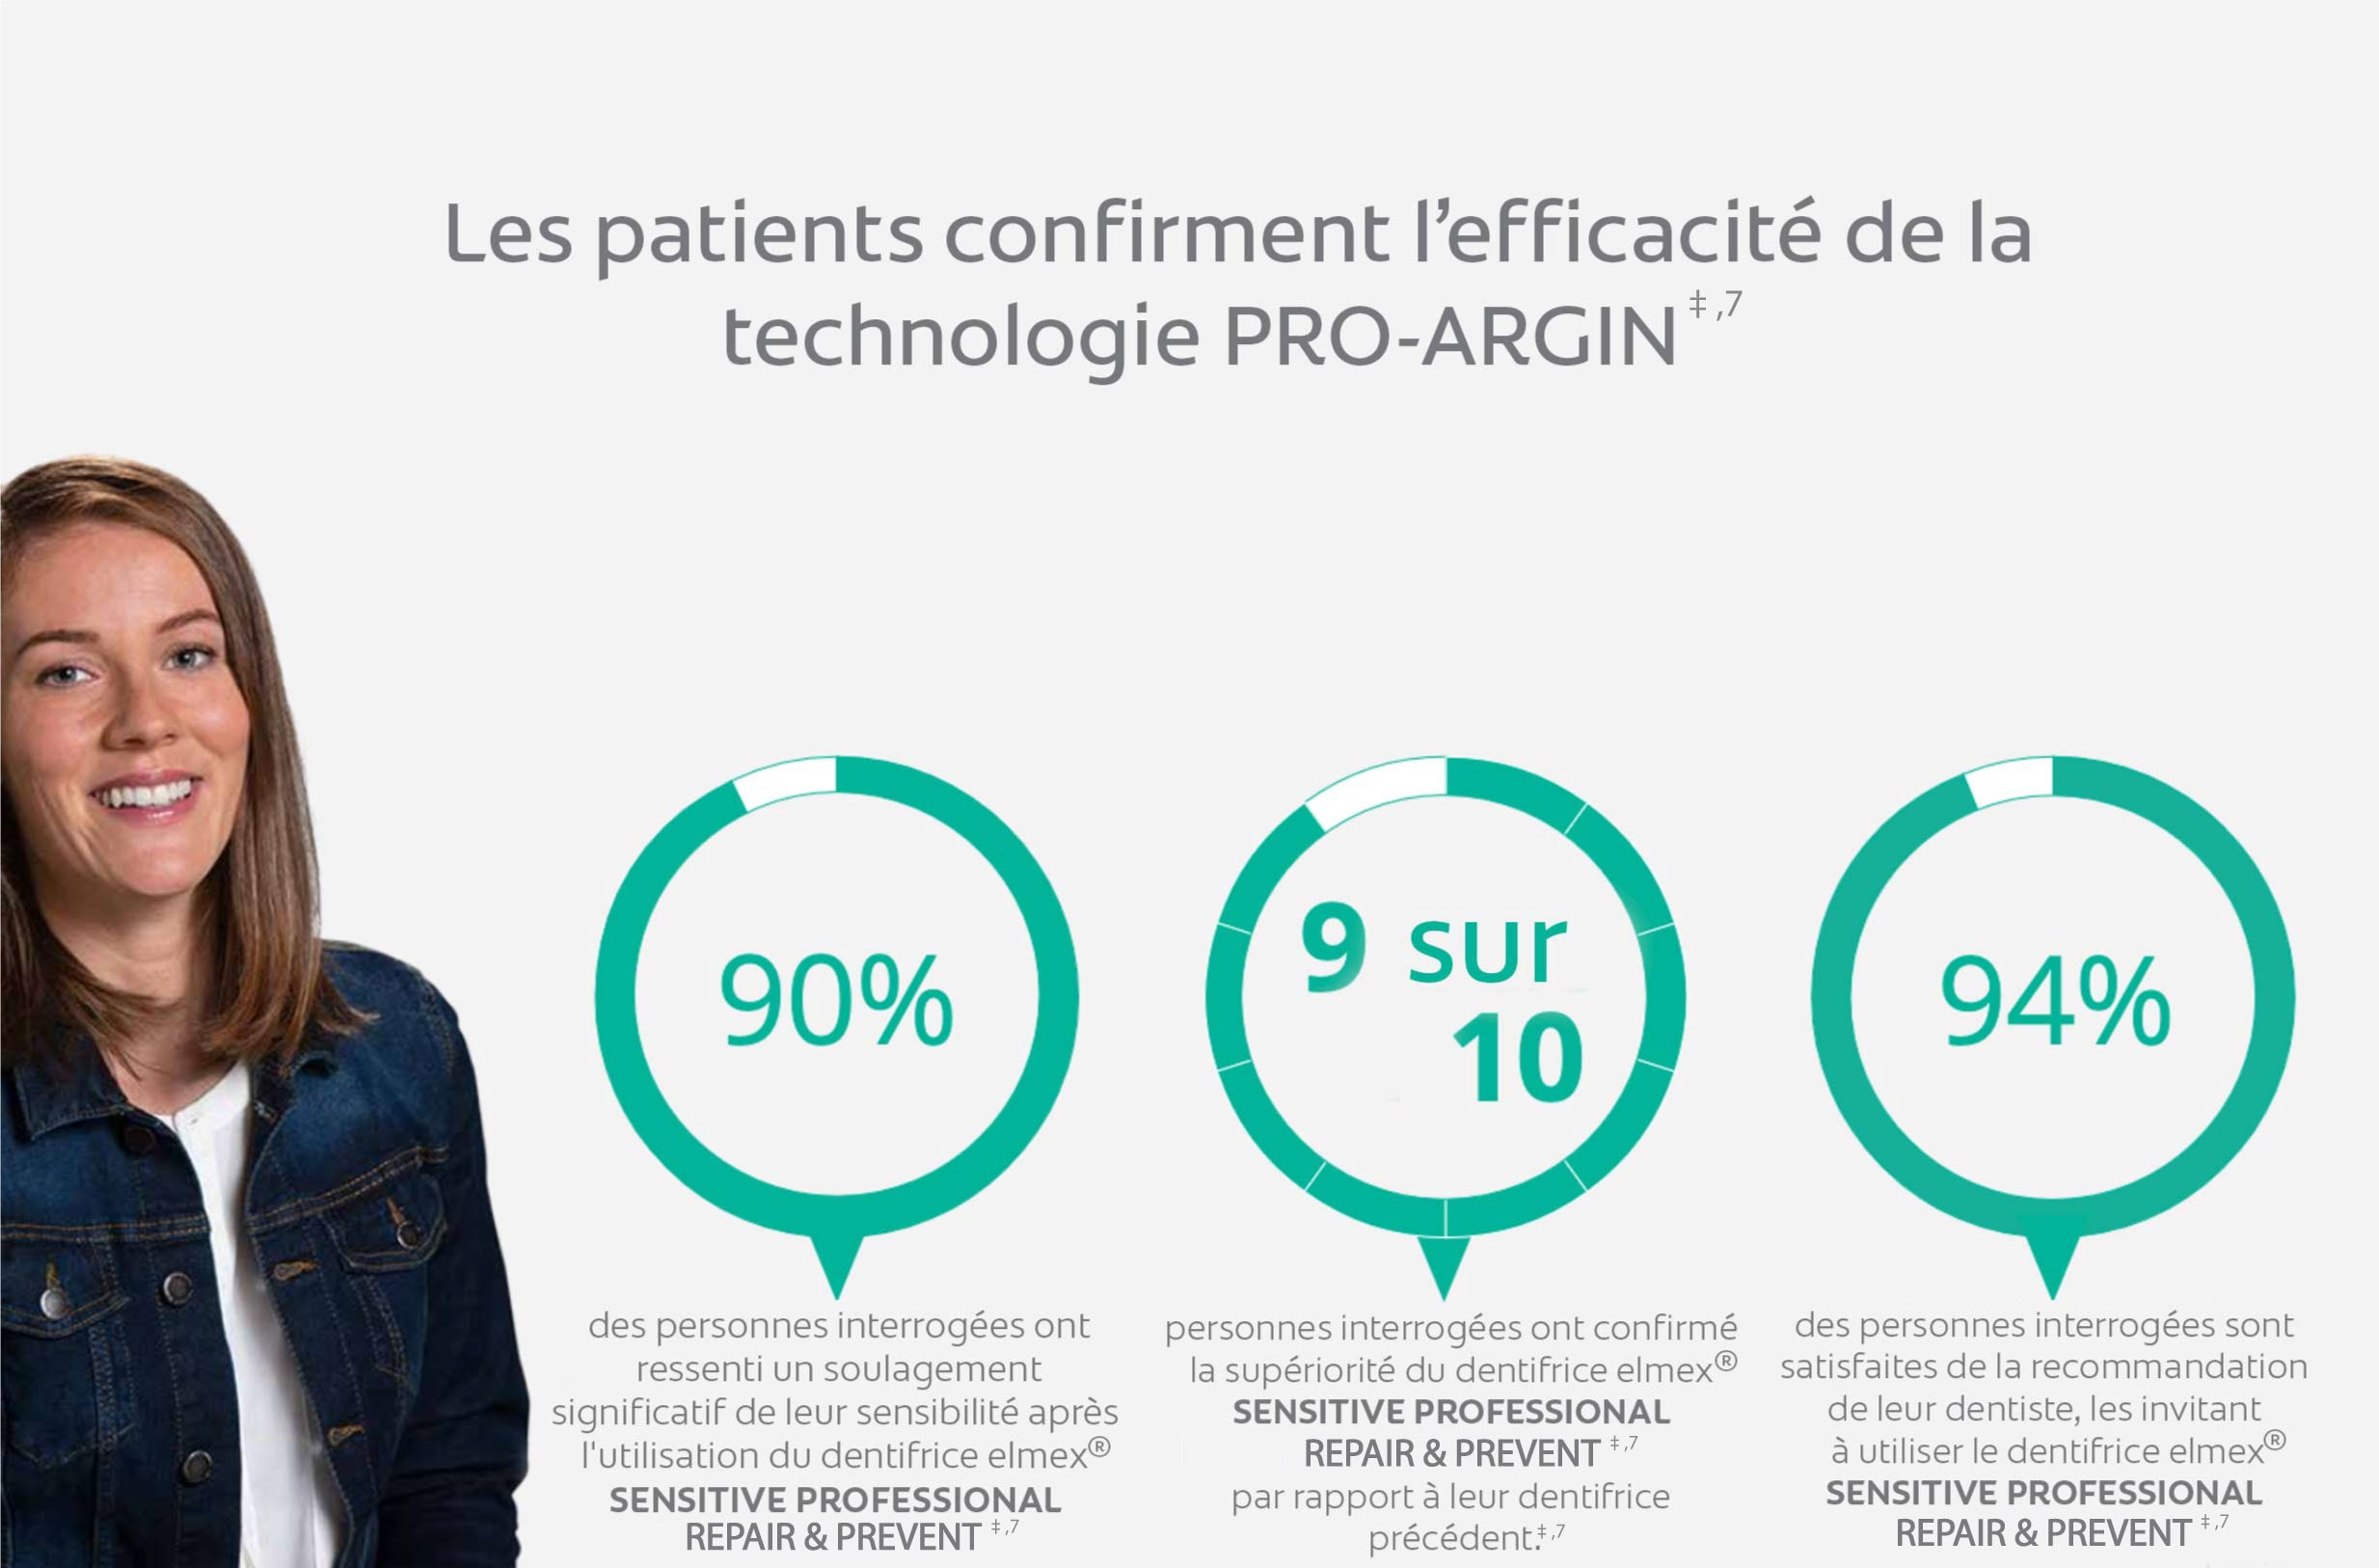 Les patients confirment l’efficacité de la technologie PRO-ARGIN